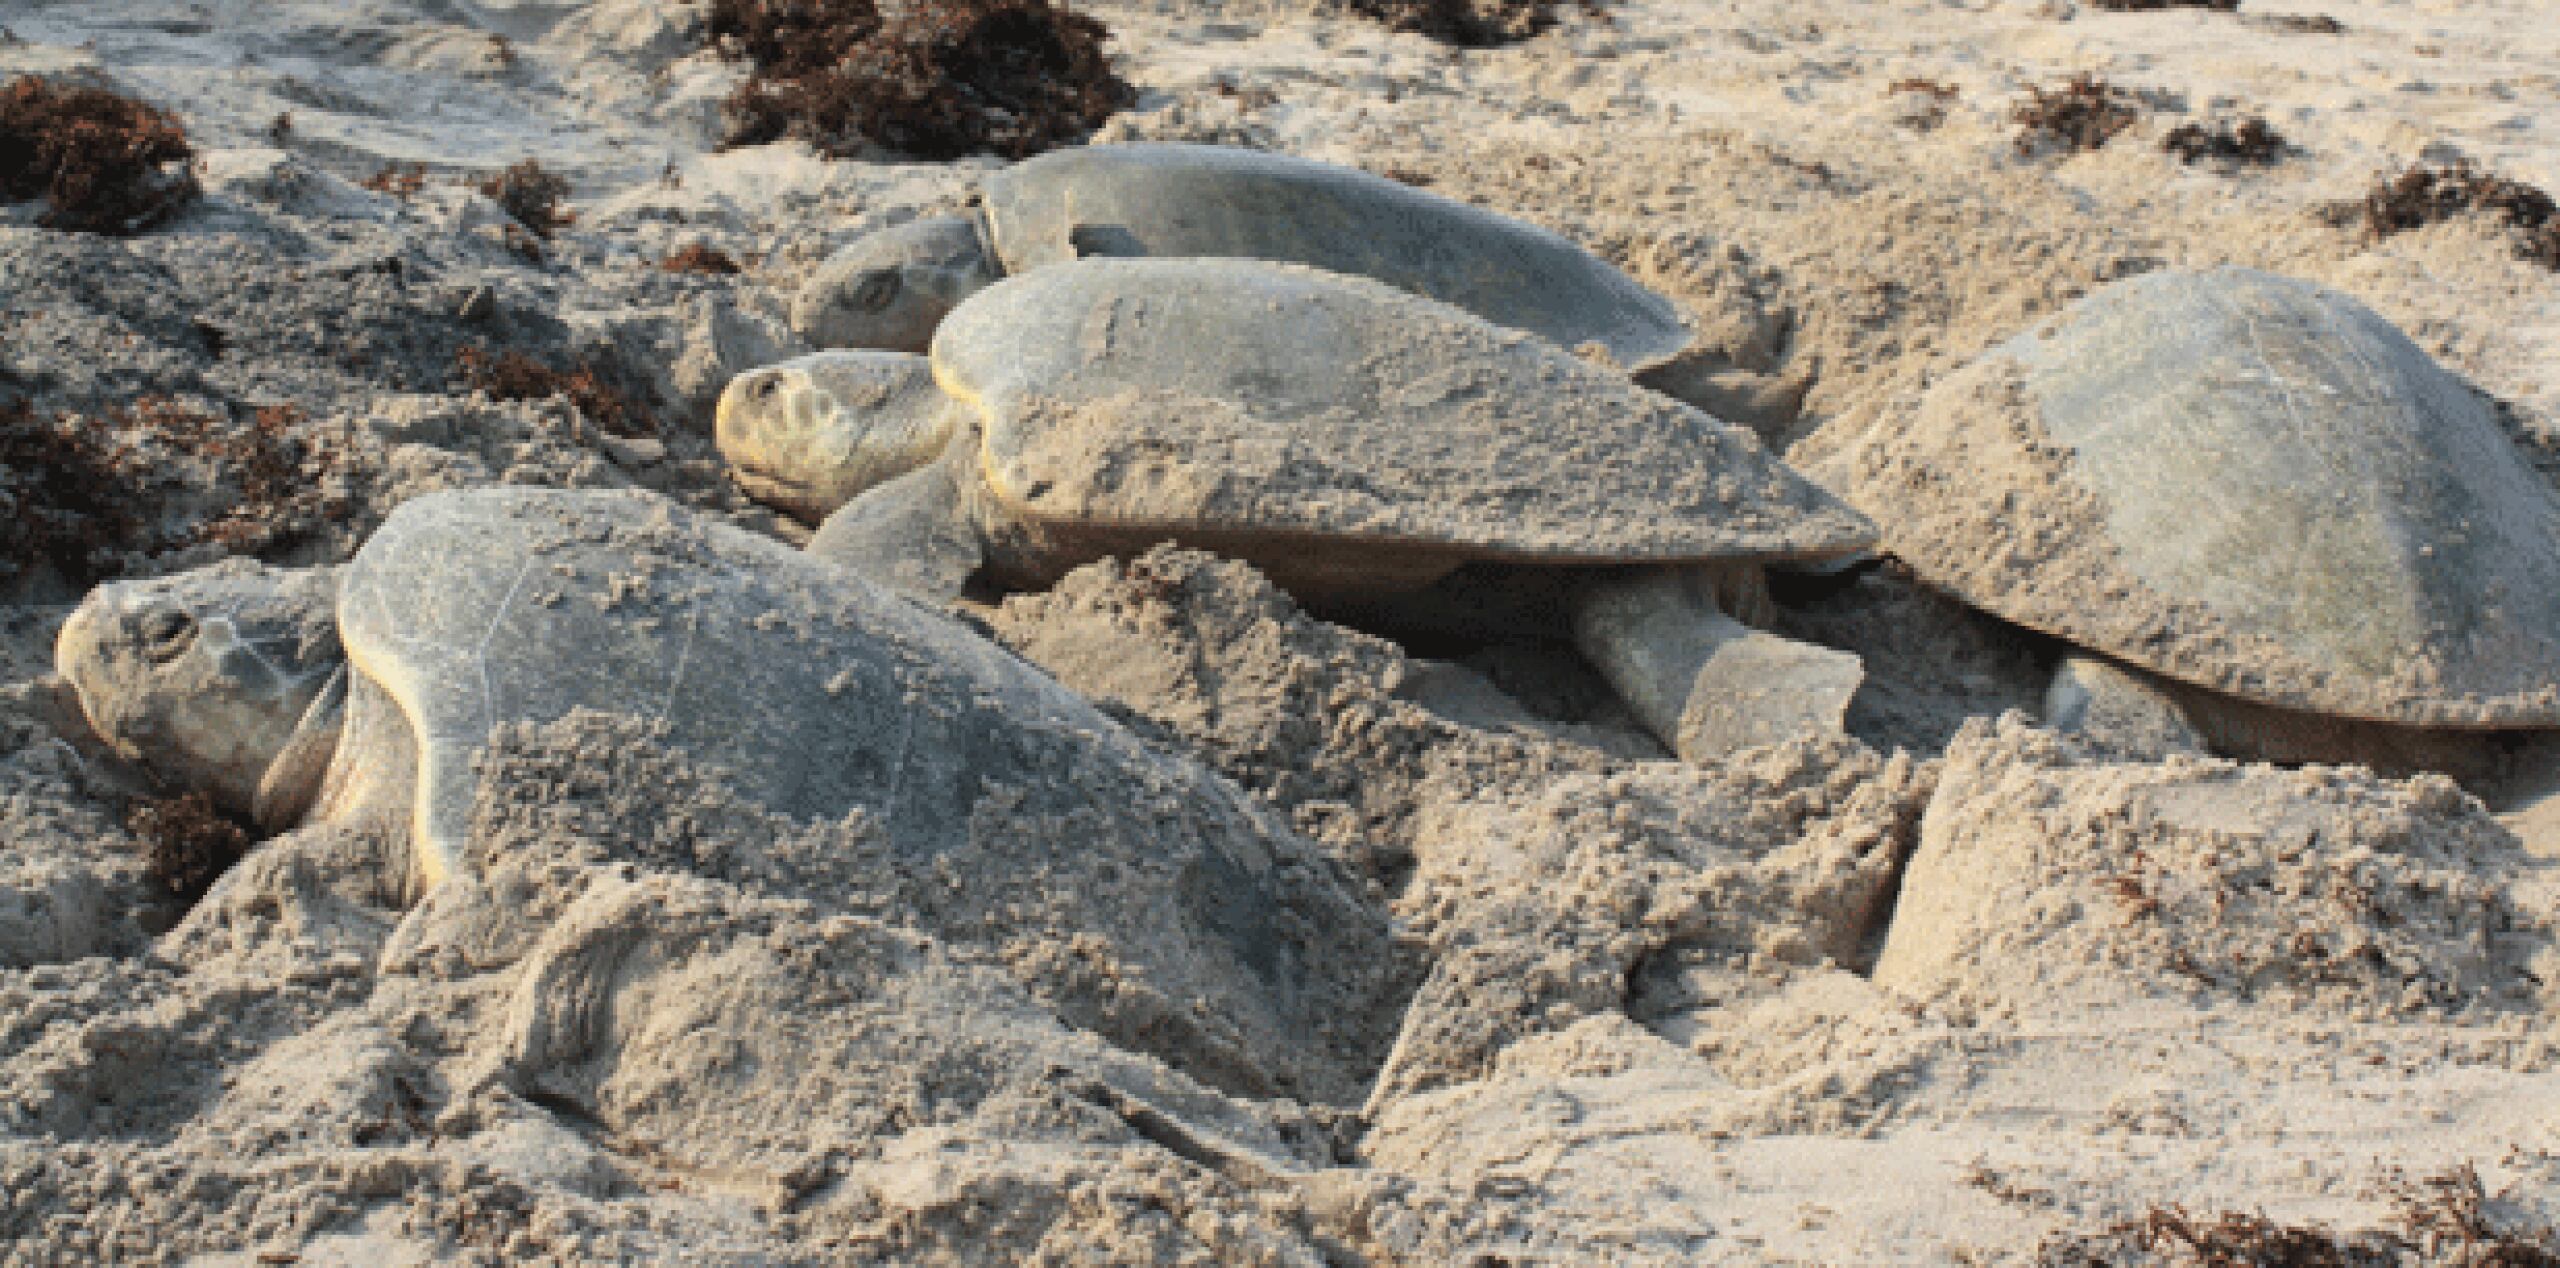 La tortuga Lora anida en playas del Golfo de México desde Luisiana, Estados Unidos, hasta Campeche, siendo las playas de Tamaulipas las favoritas de esta especie en México. (EFE)